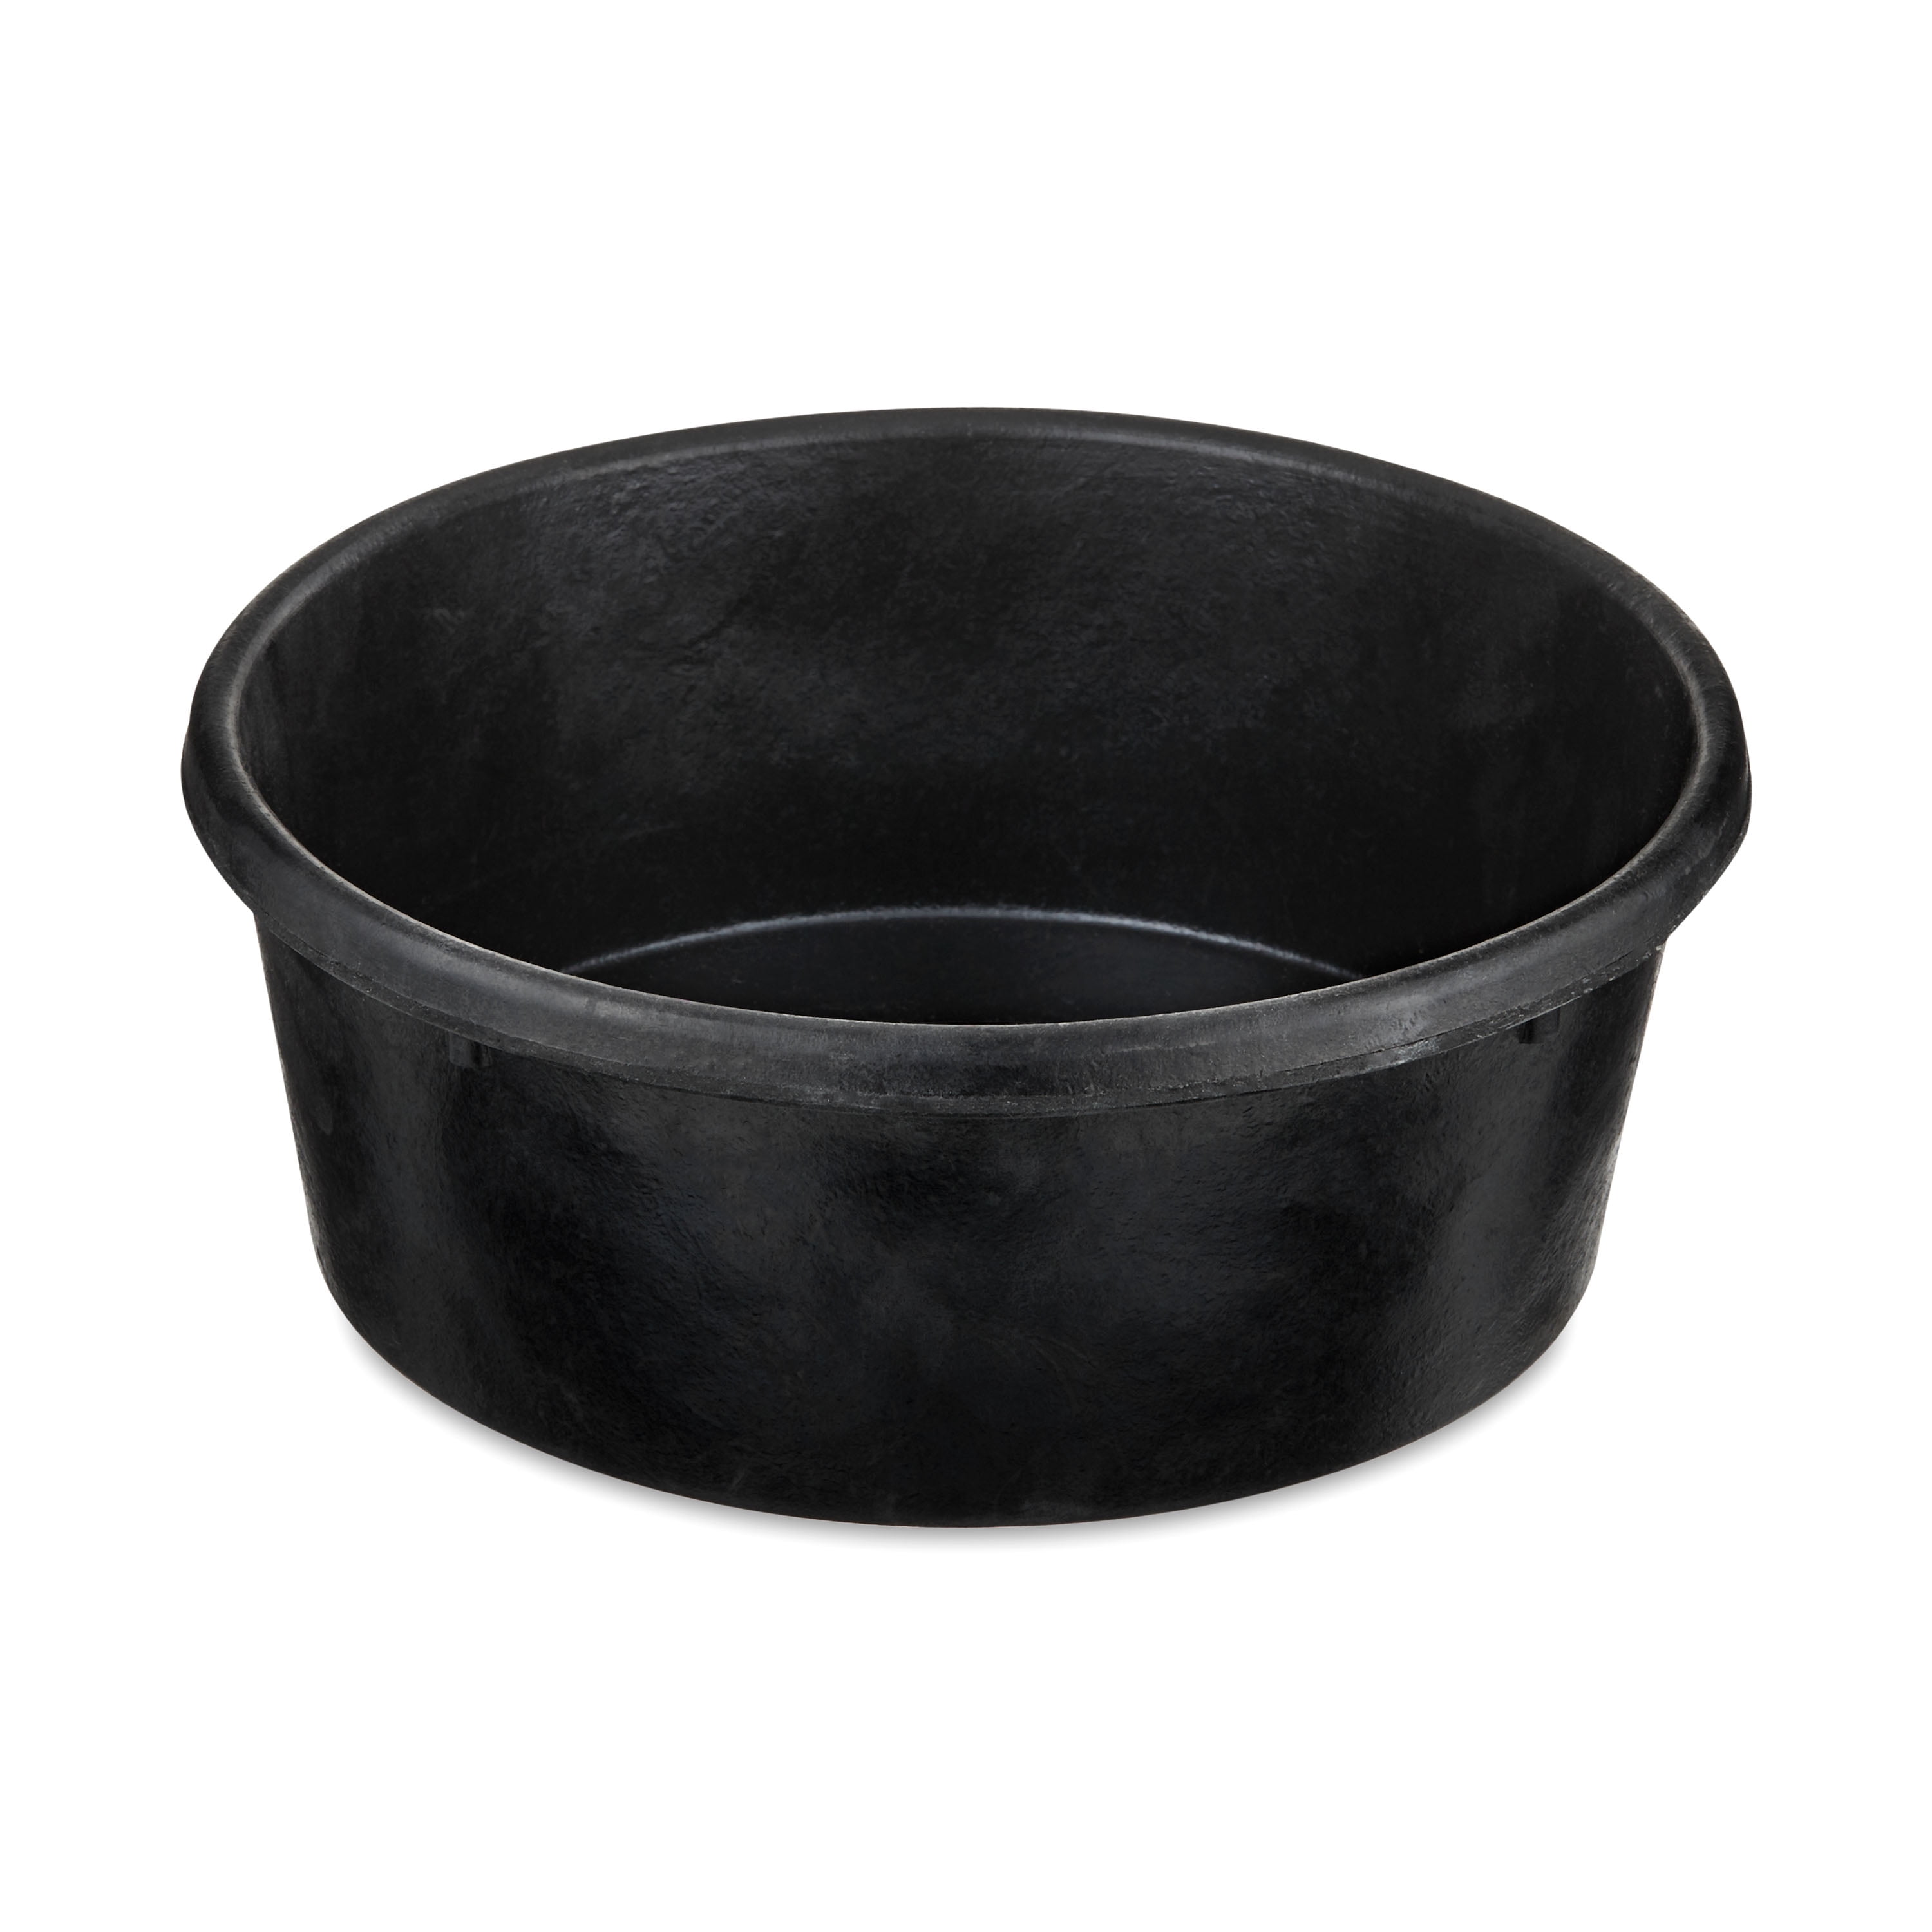 Vibrant Life Large Rubber Dog Bowl - Black - 3 qt